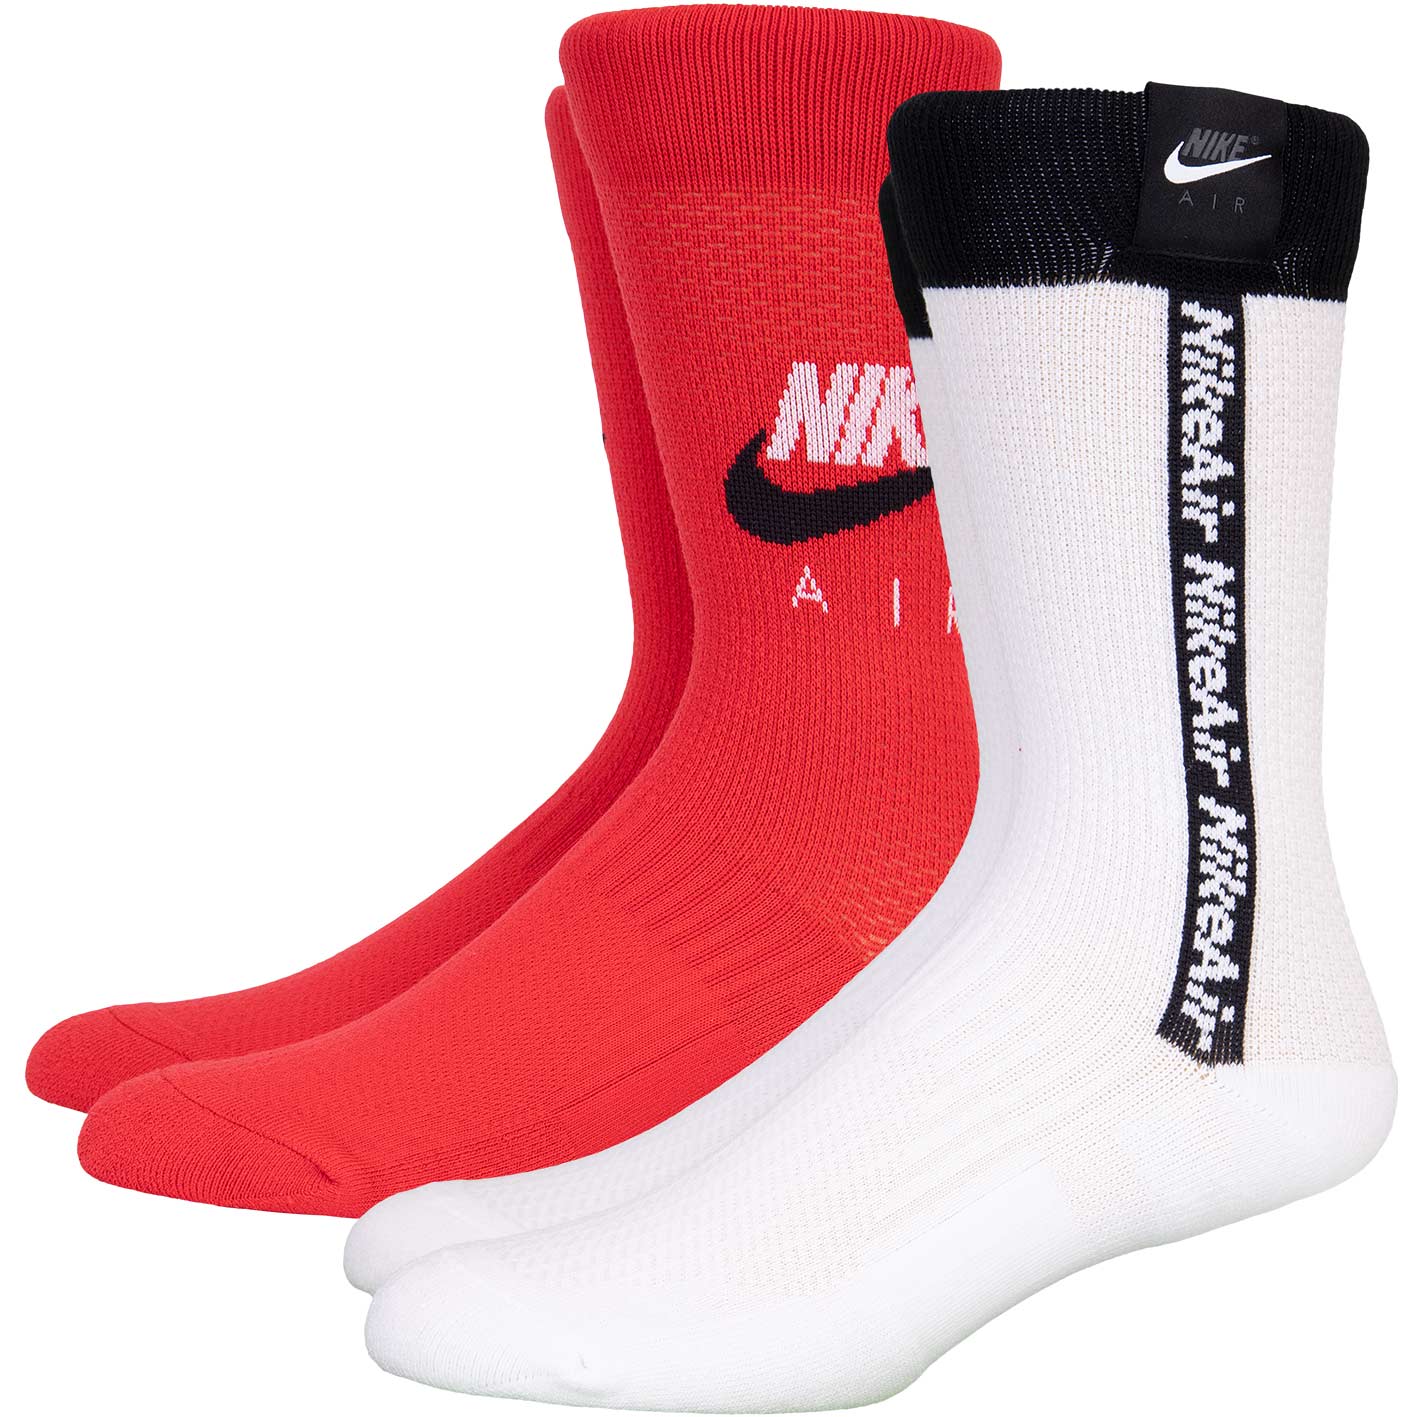 ☆ Nike Air Crew Socken 2er Pack rot/weiß - hier bestellen!